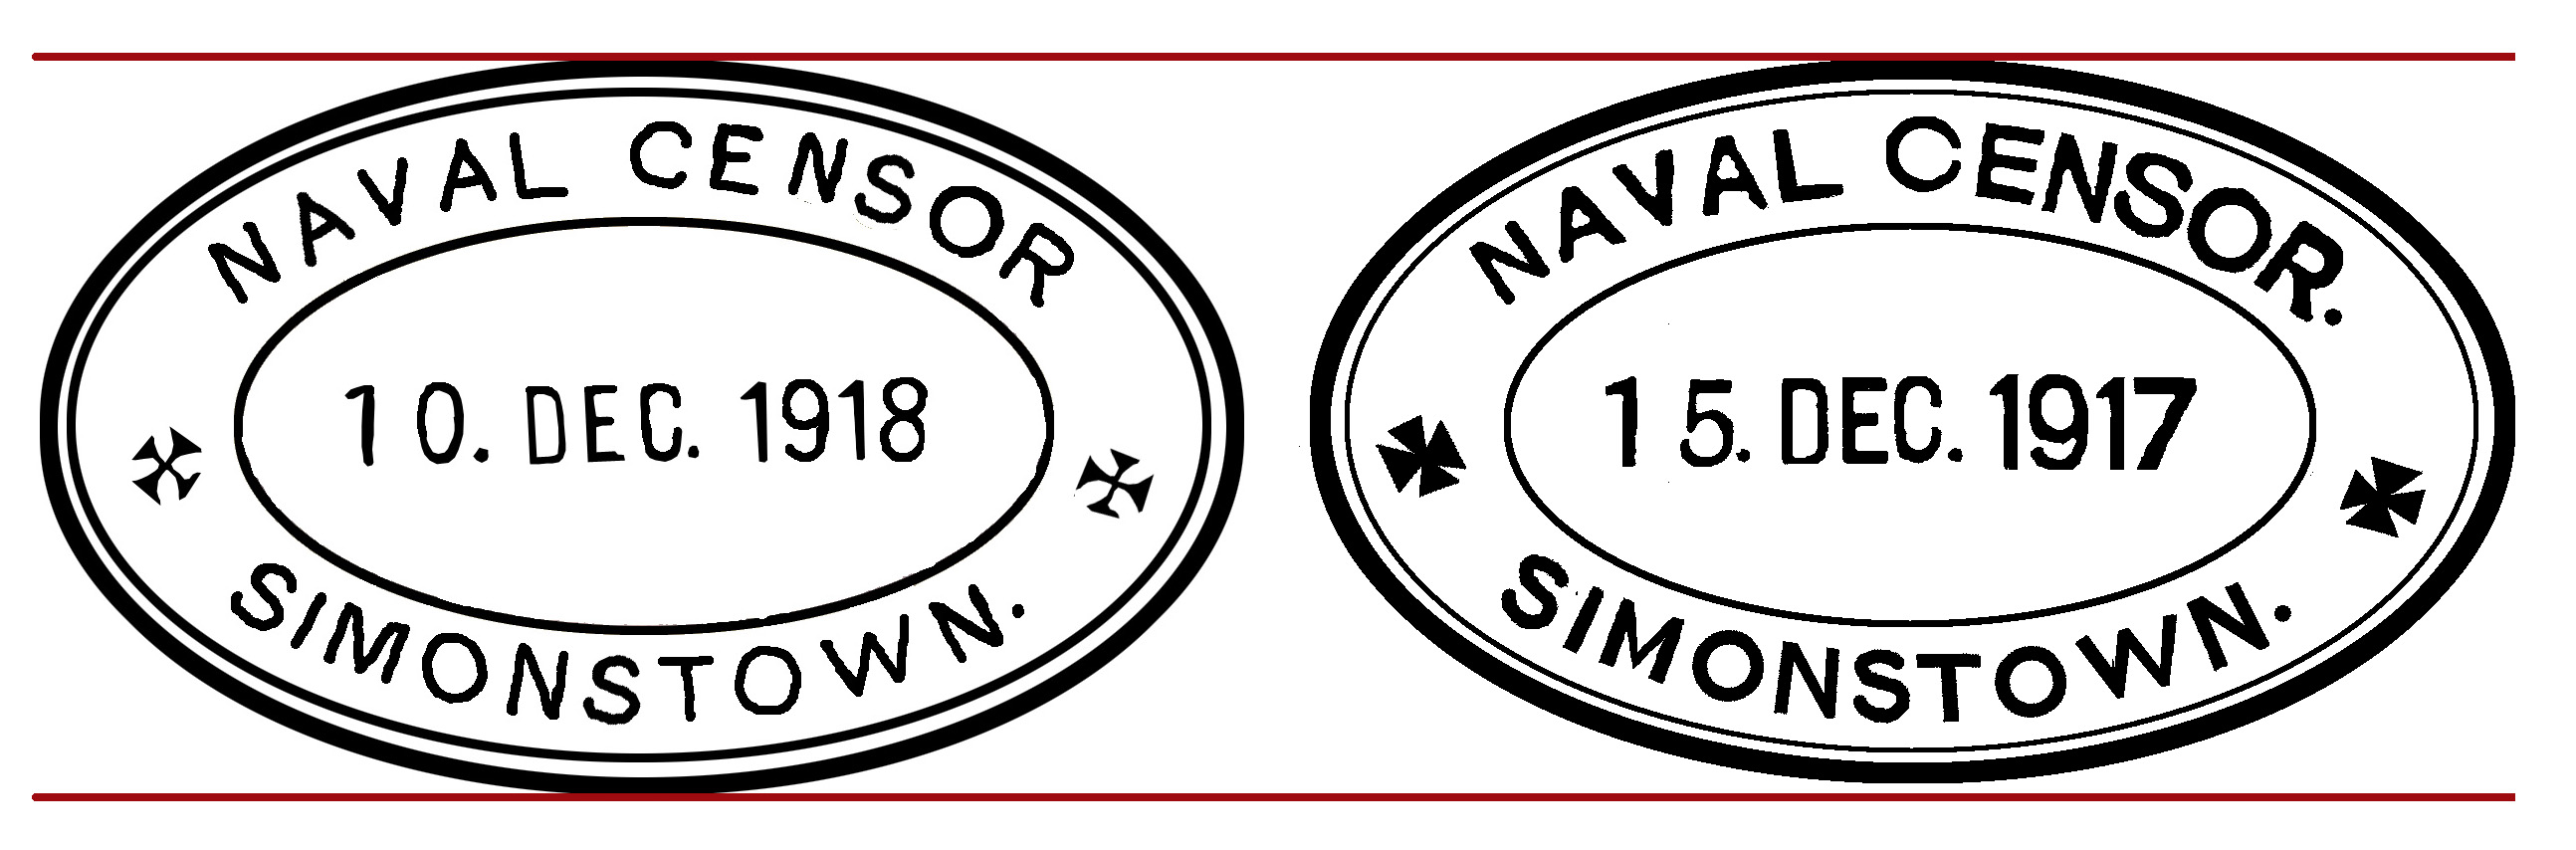 Simonstown-Naval-Censor-1917-and-1918.jpg